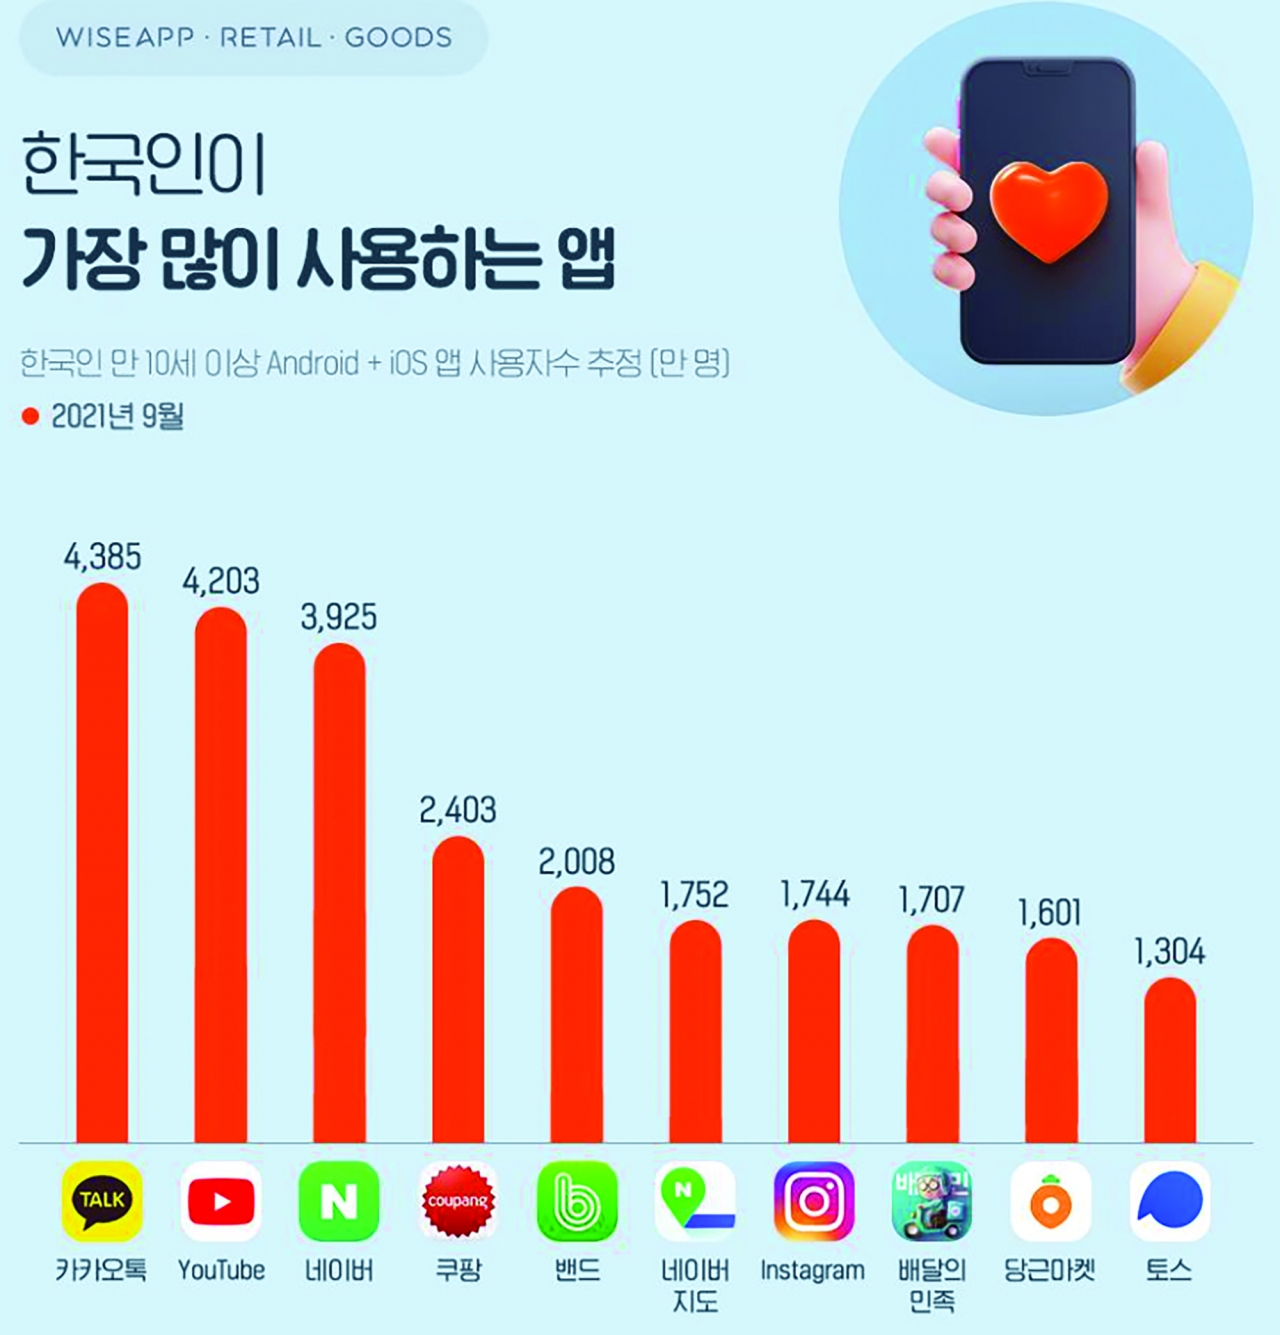 앱/리테일 분석 서비스 와이즈앱/리테일/굿즈가 2021년 9월 기준 한국인이 가장 많이 사용하는 앱 조사결과에 따르면 1위는 카카오톡, 2위 유튜브, 3위 네이버 순으로 나타났다. 이 조사는 한국인 만 10세이상 안드로이트+iOS앱 사용자수를 집계한 것이며 데이터는 추정값으로 실제와 차이가 있을 수 있다. 사진은 와이즈앱 페이스북 캡쳐.